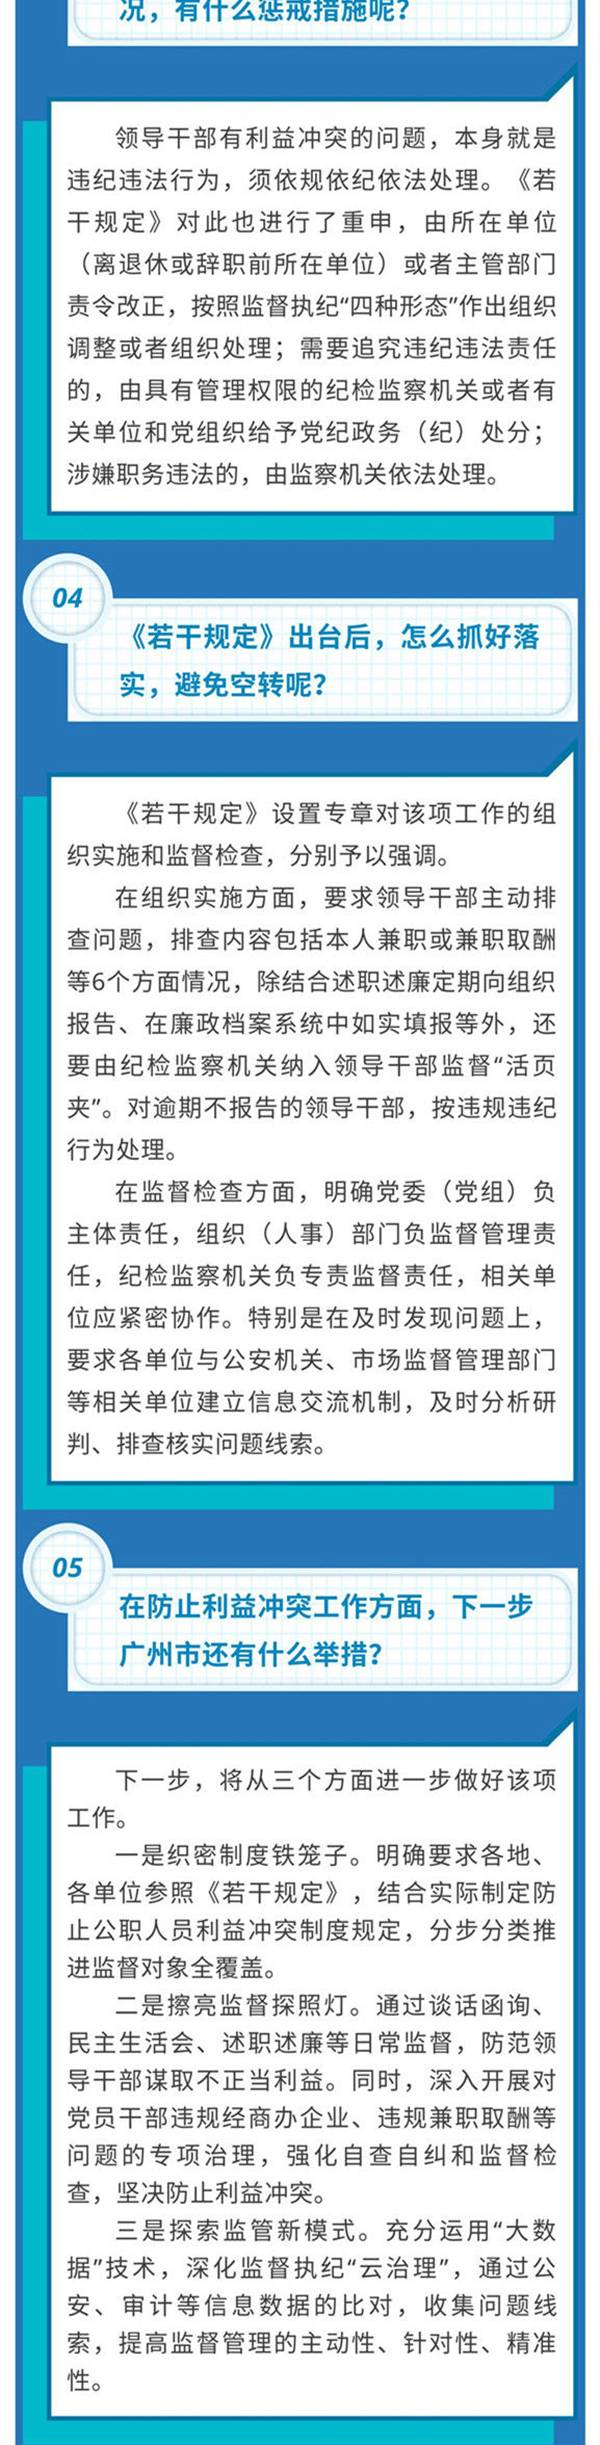 广州：领导离退休3年内不得到原职管辖地企业任职